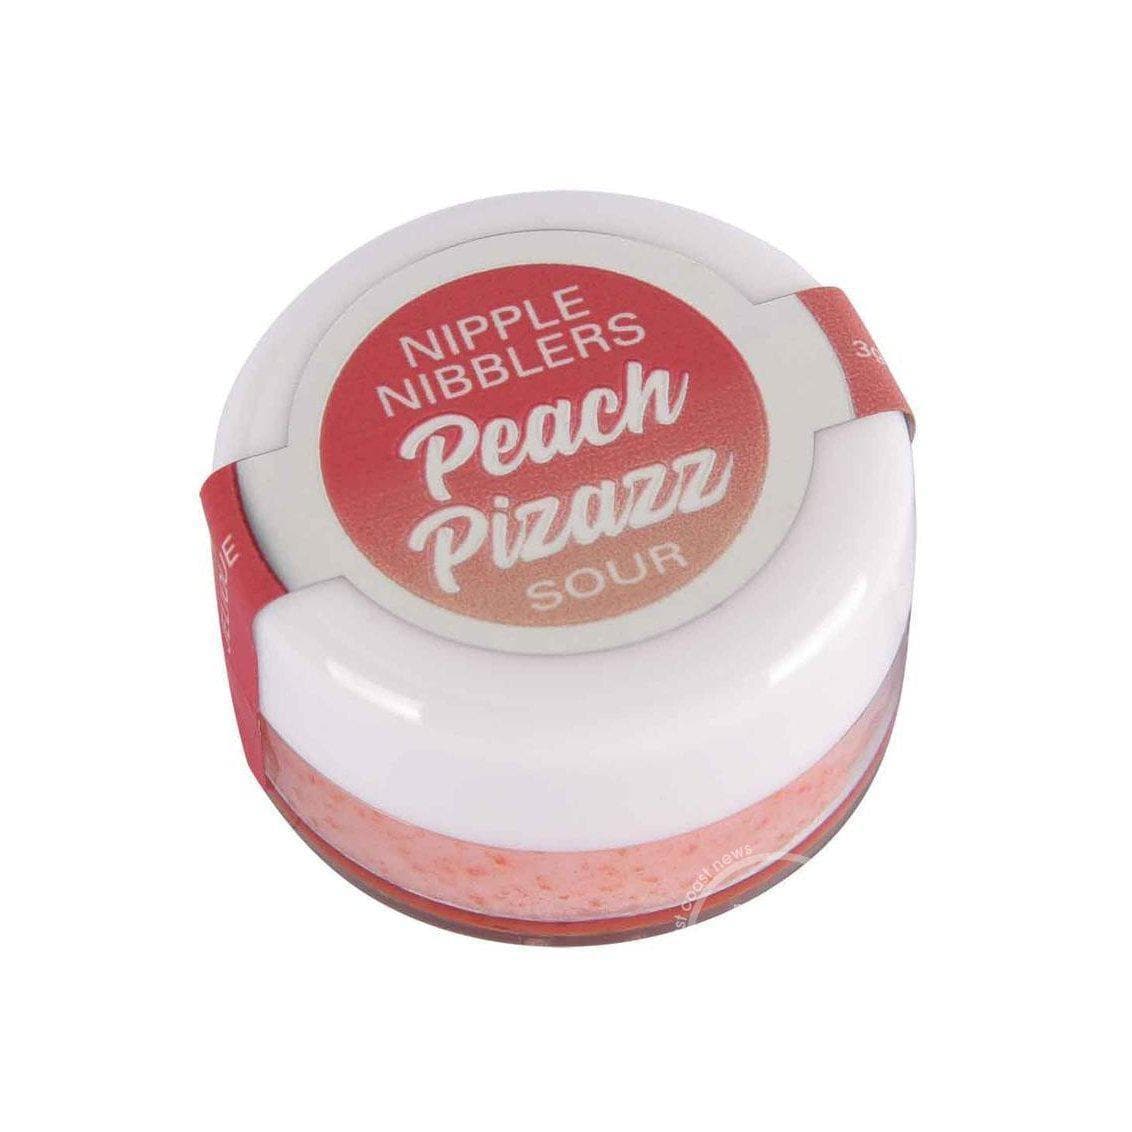 Jelique Nipple Nibblers Sour Tingle Pleasure Balm Peach Pizazz 3 gm - Romantic Blessings